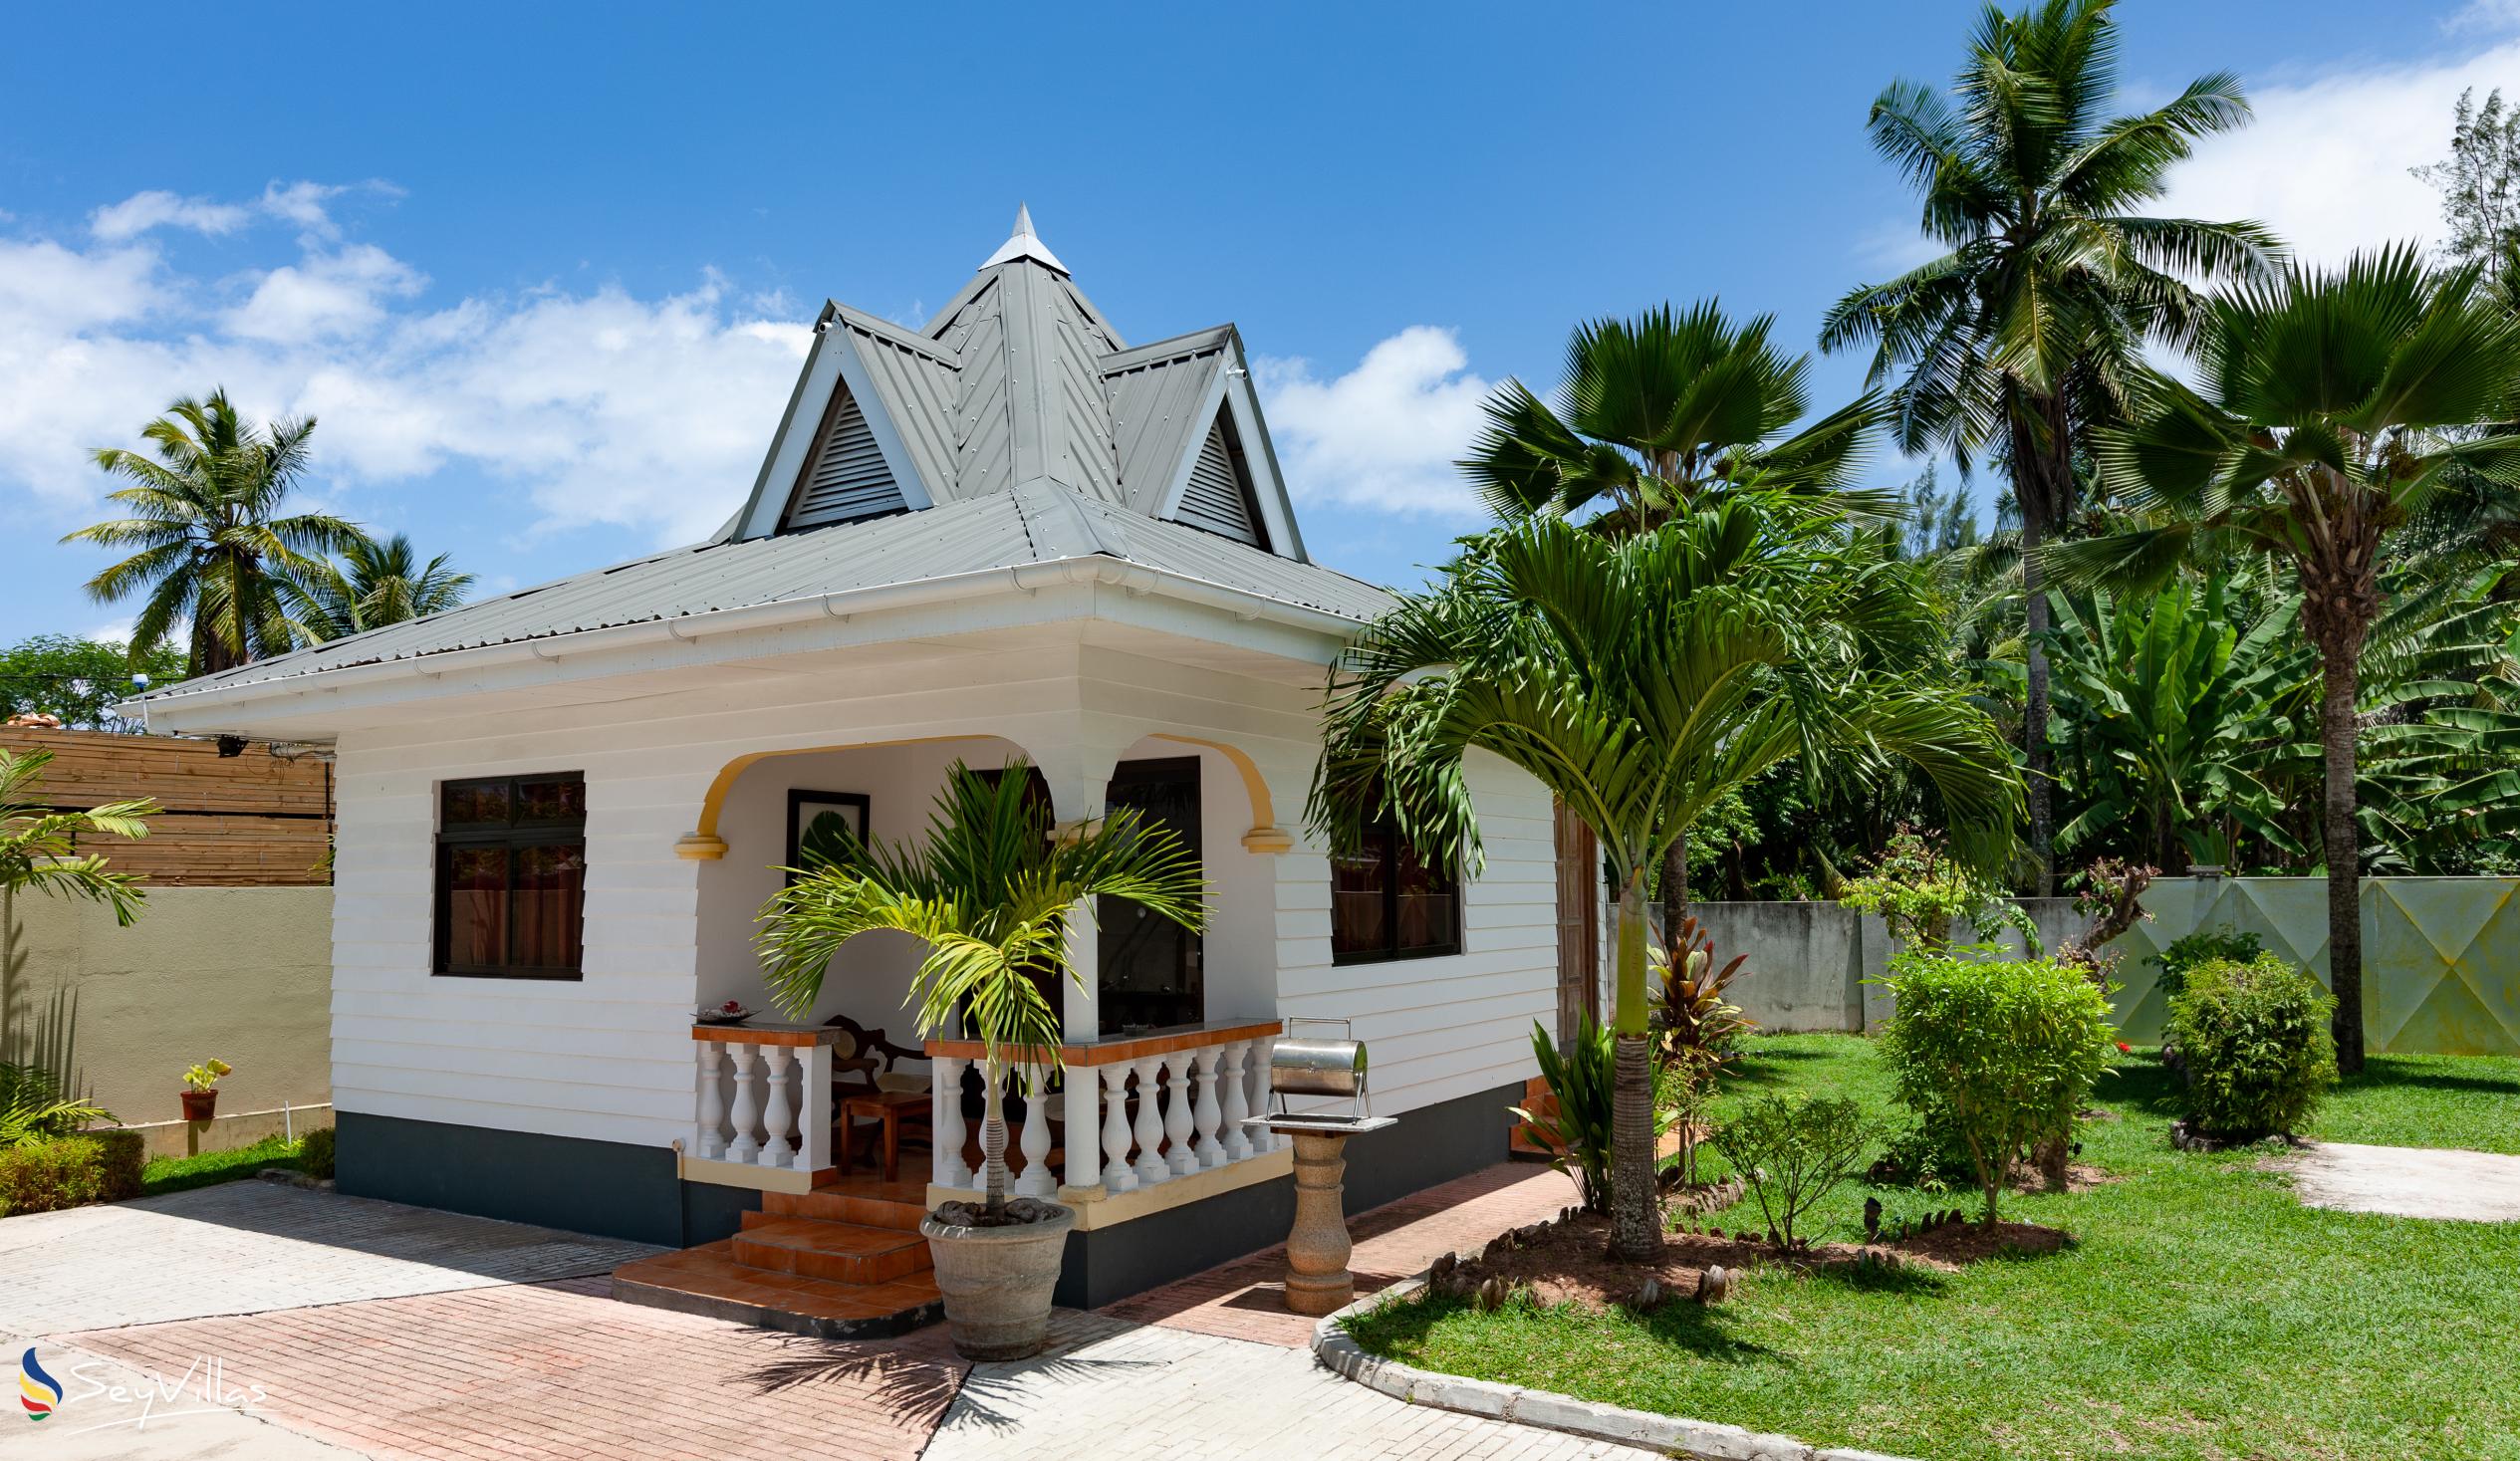 Foto 6: Villa Aya - Aussenbereich - Praslin (Seychellen)